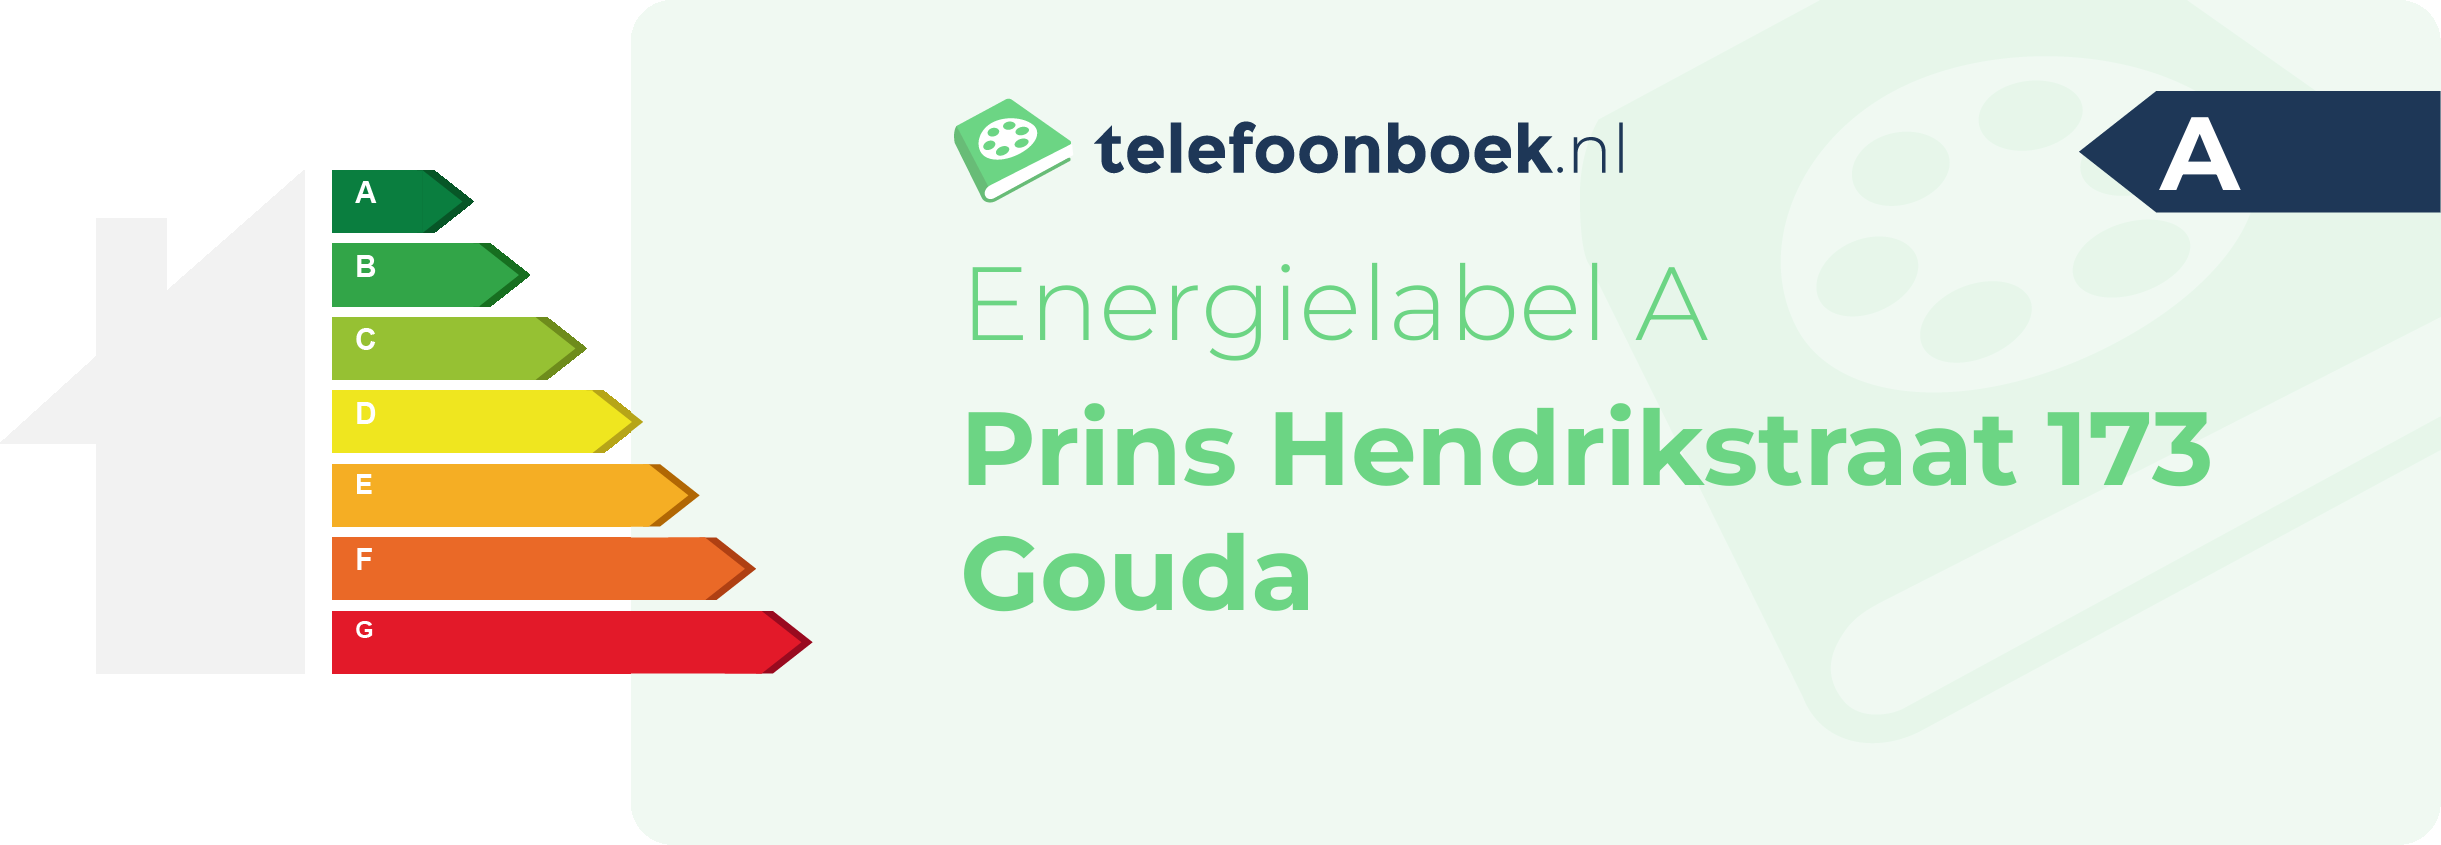 Energielabel Prins Hendrikstraat 173 Gouda